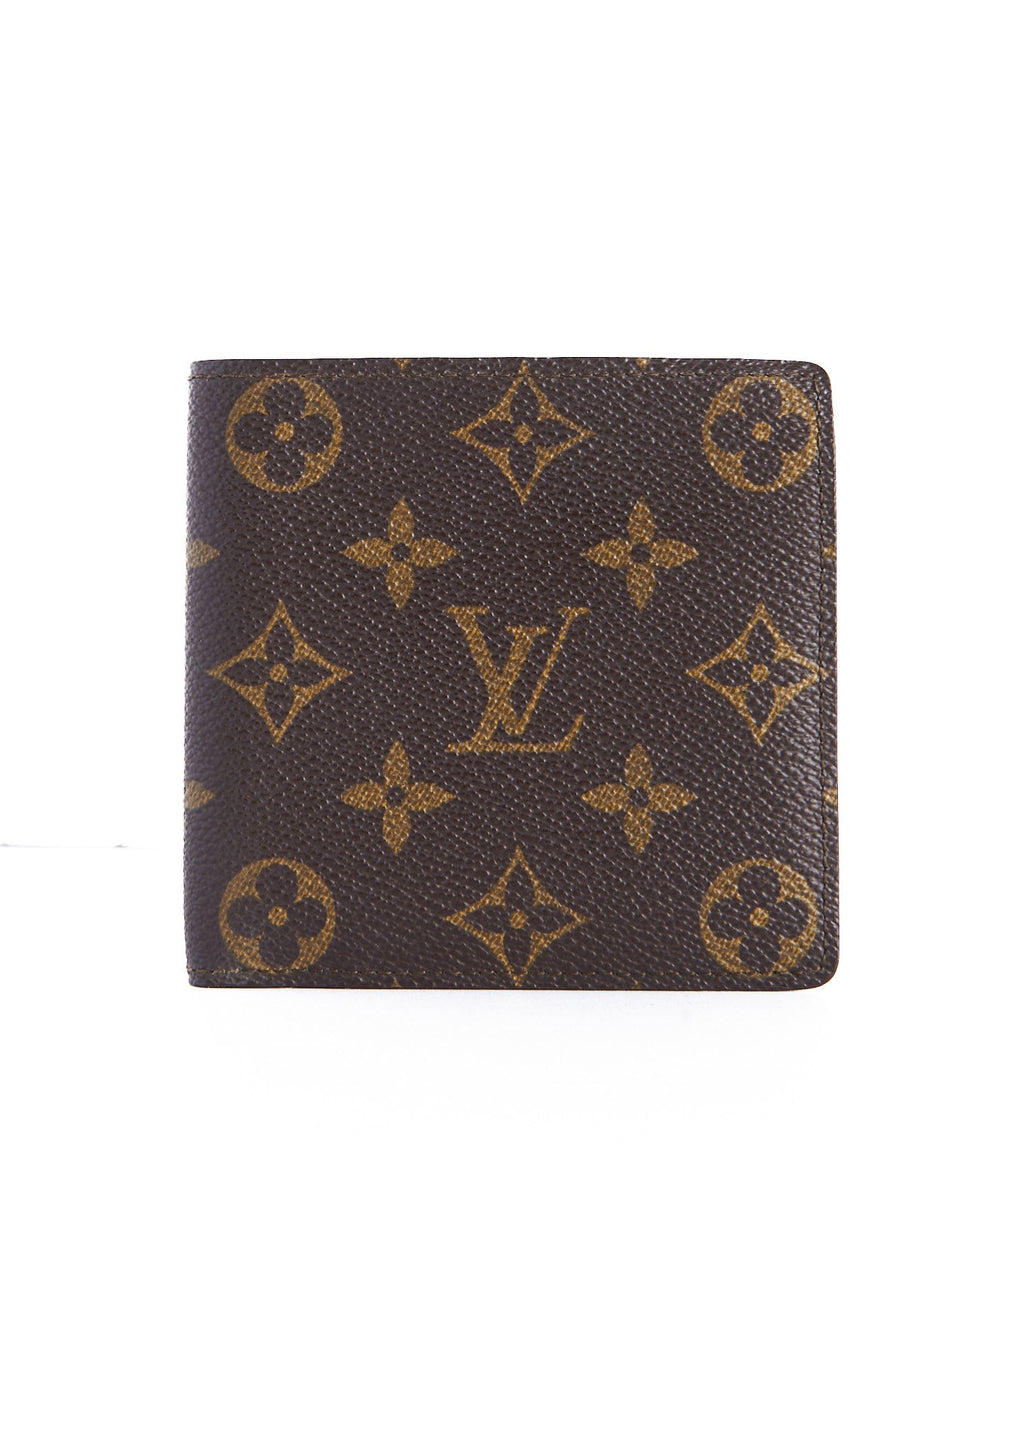 1990 Vintage Louis Vuitton Mens Marco Wallet